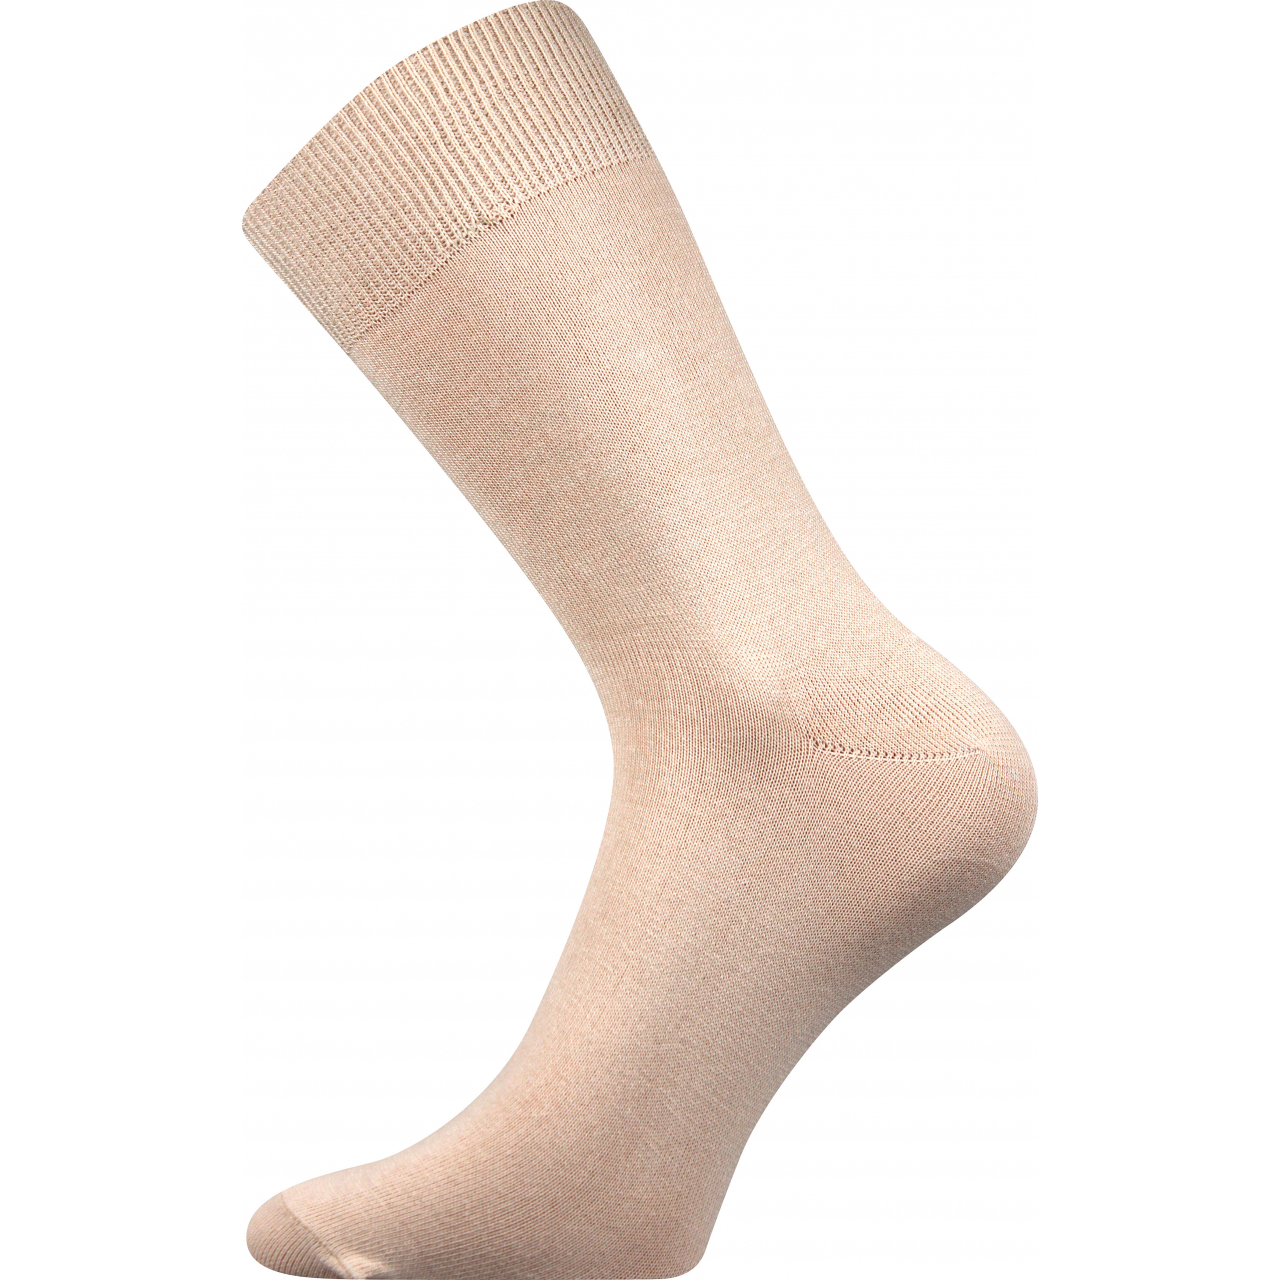 Ponožky unisex klasické Boma Radovan-a - béžové, 43-46